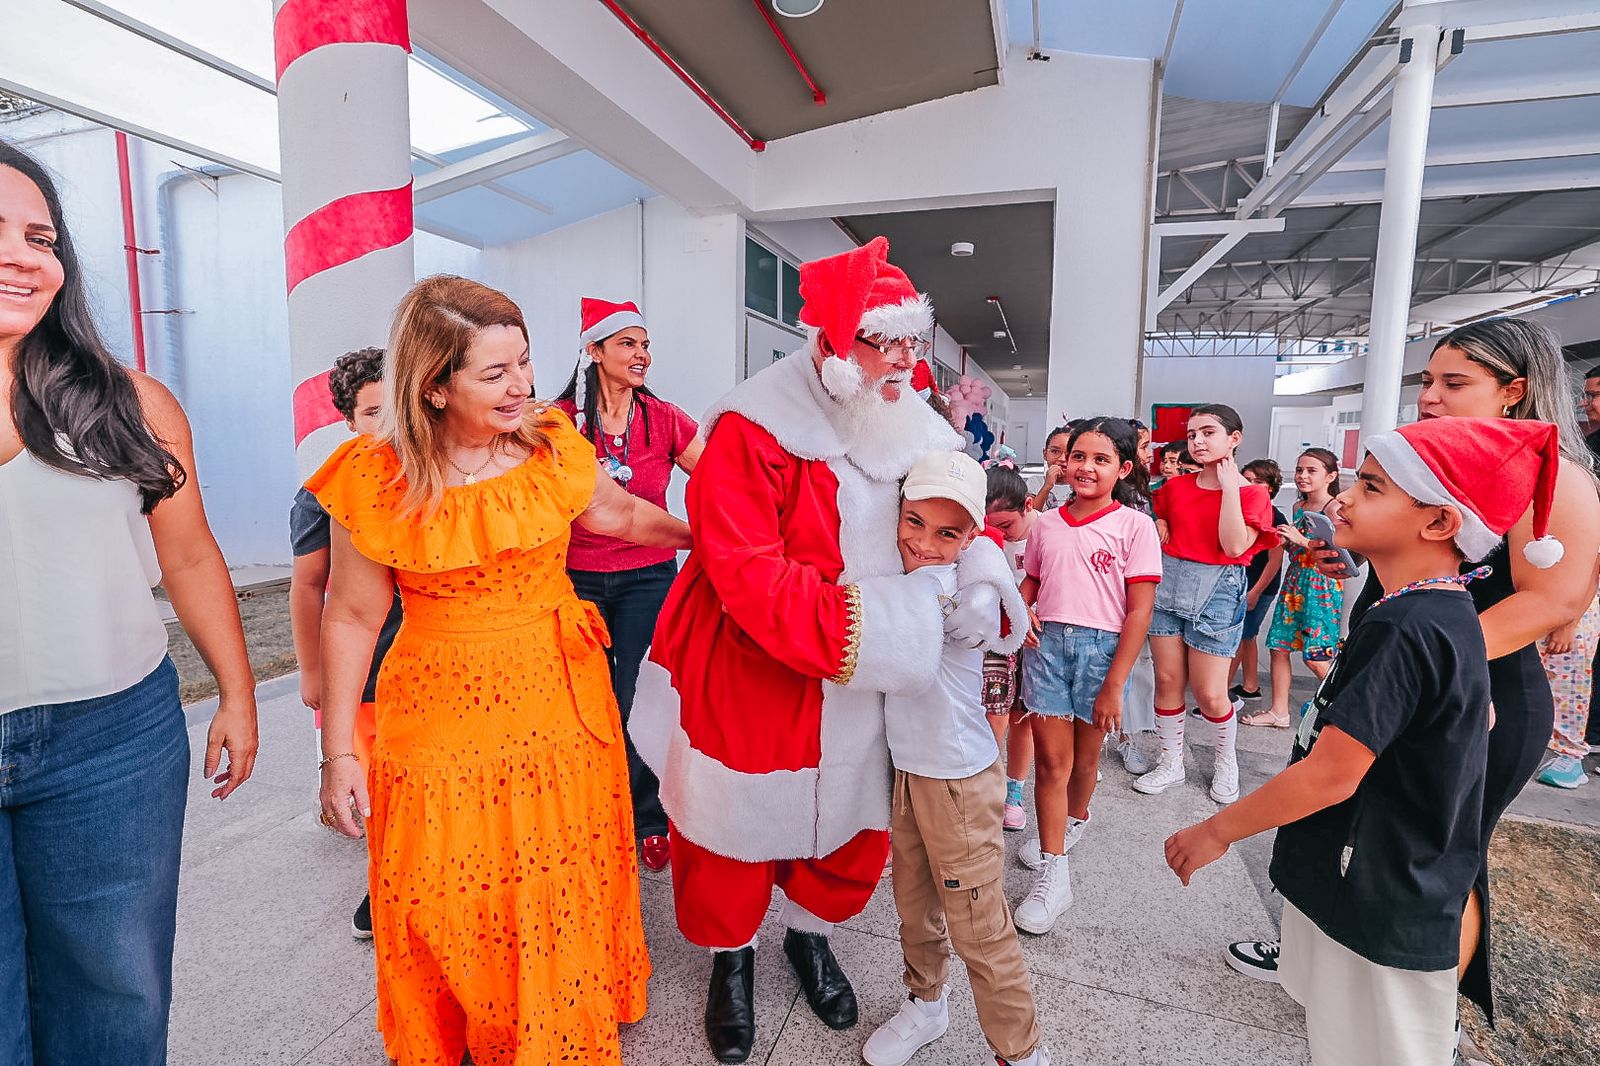 Presidente Iracema Vale acompanha Papai Noel na chegada ao espaço lindamente decorado para a celebração natalina 